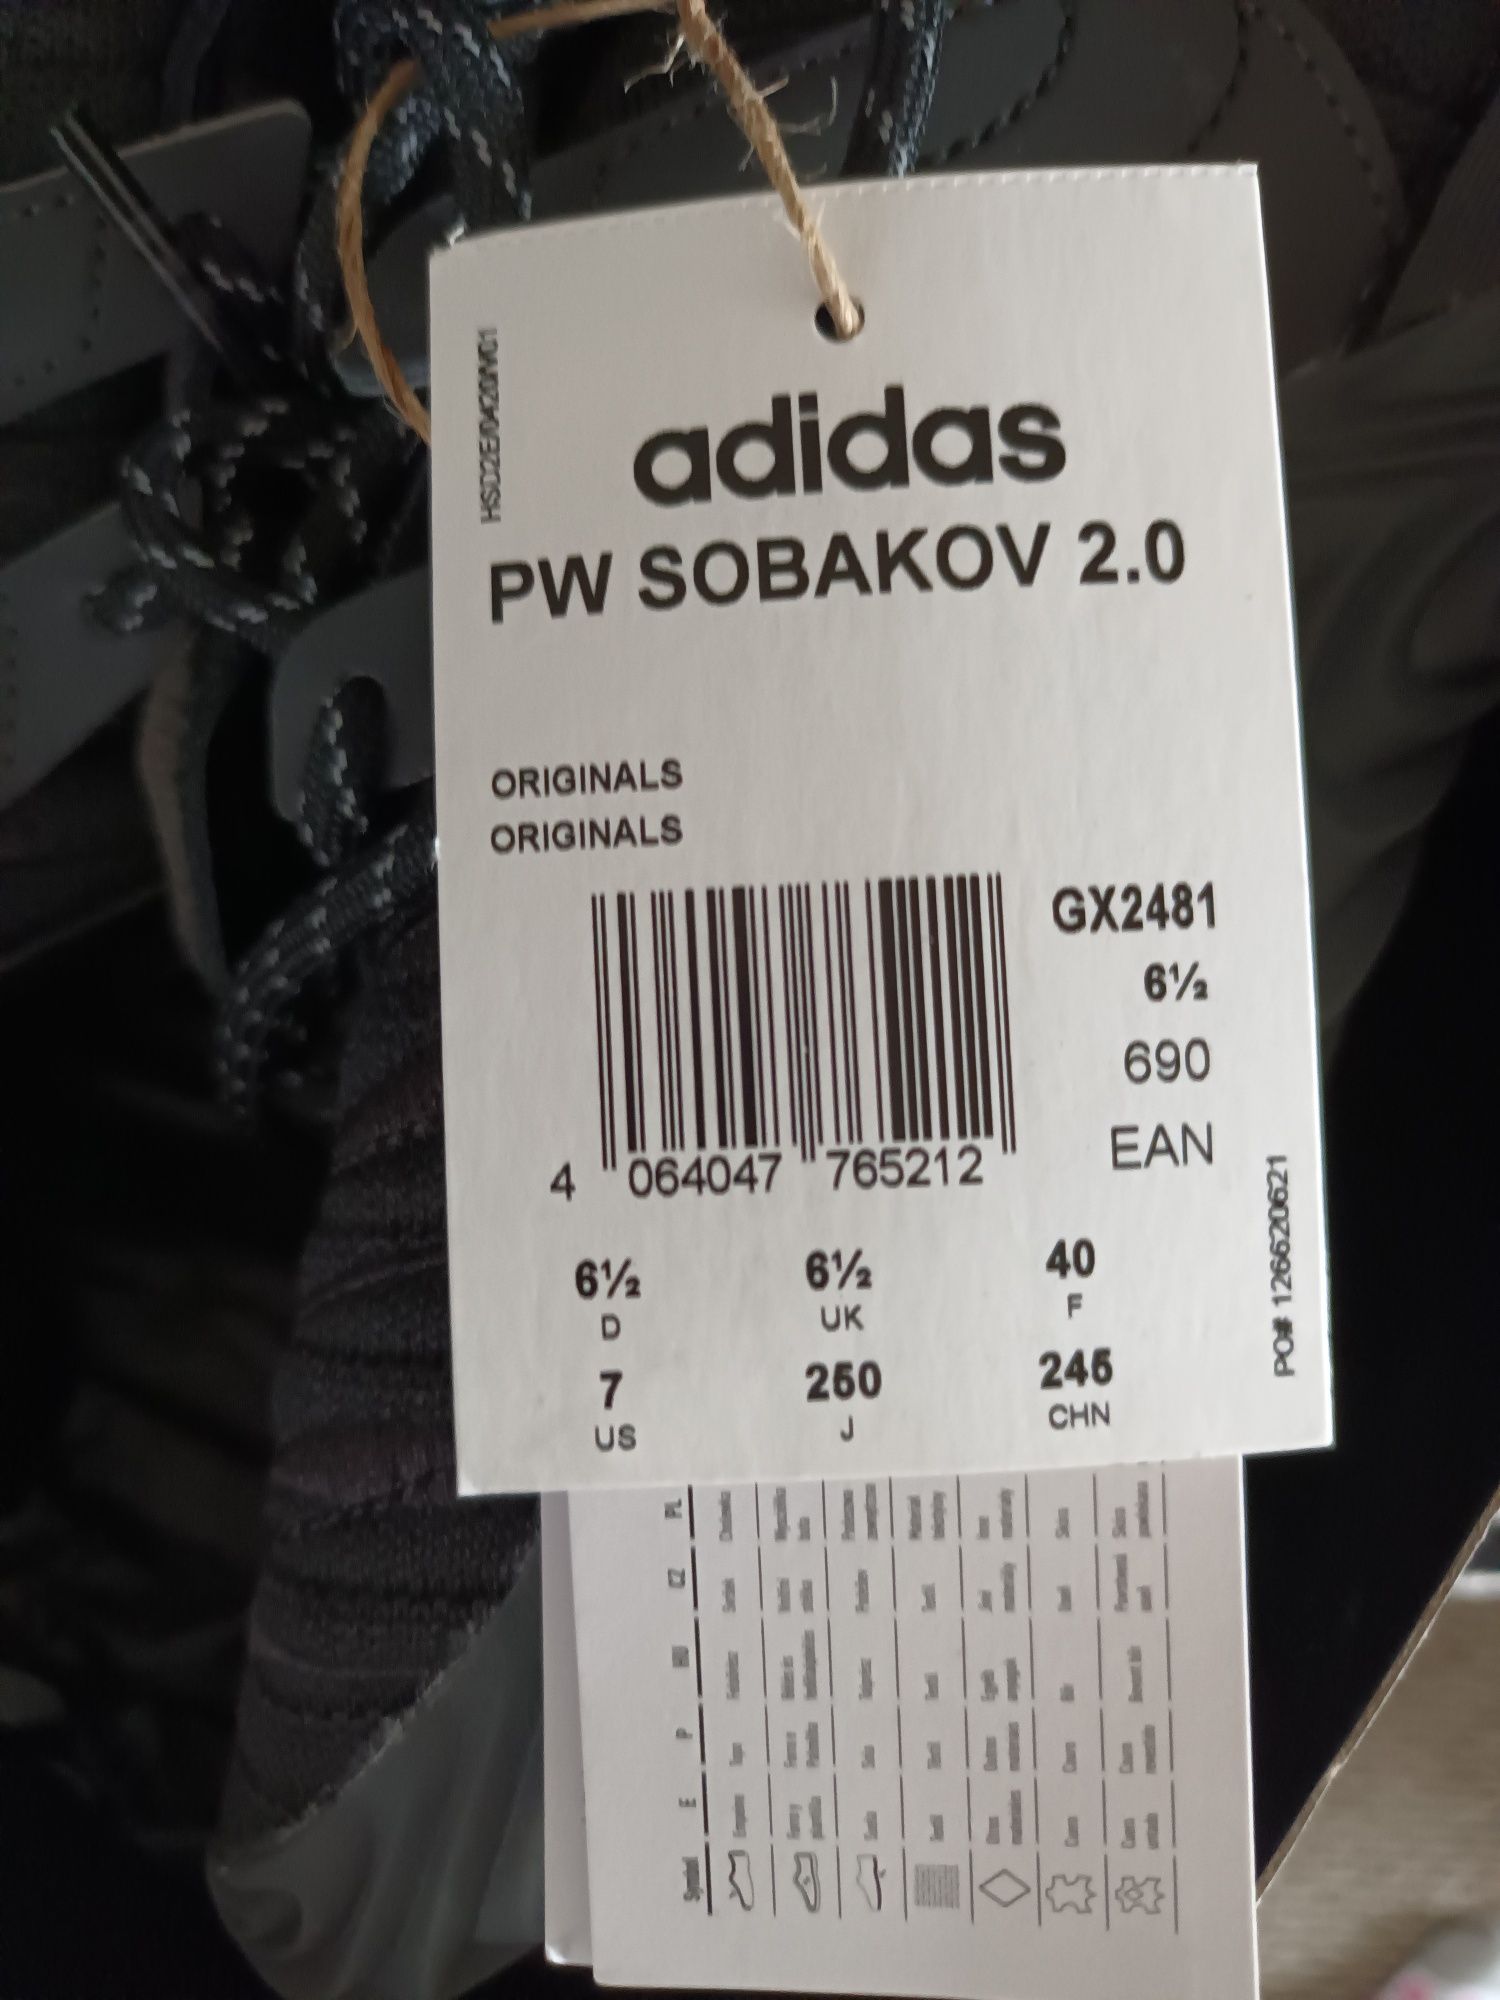 Adidas PW SOBAKOV 2.0